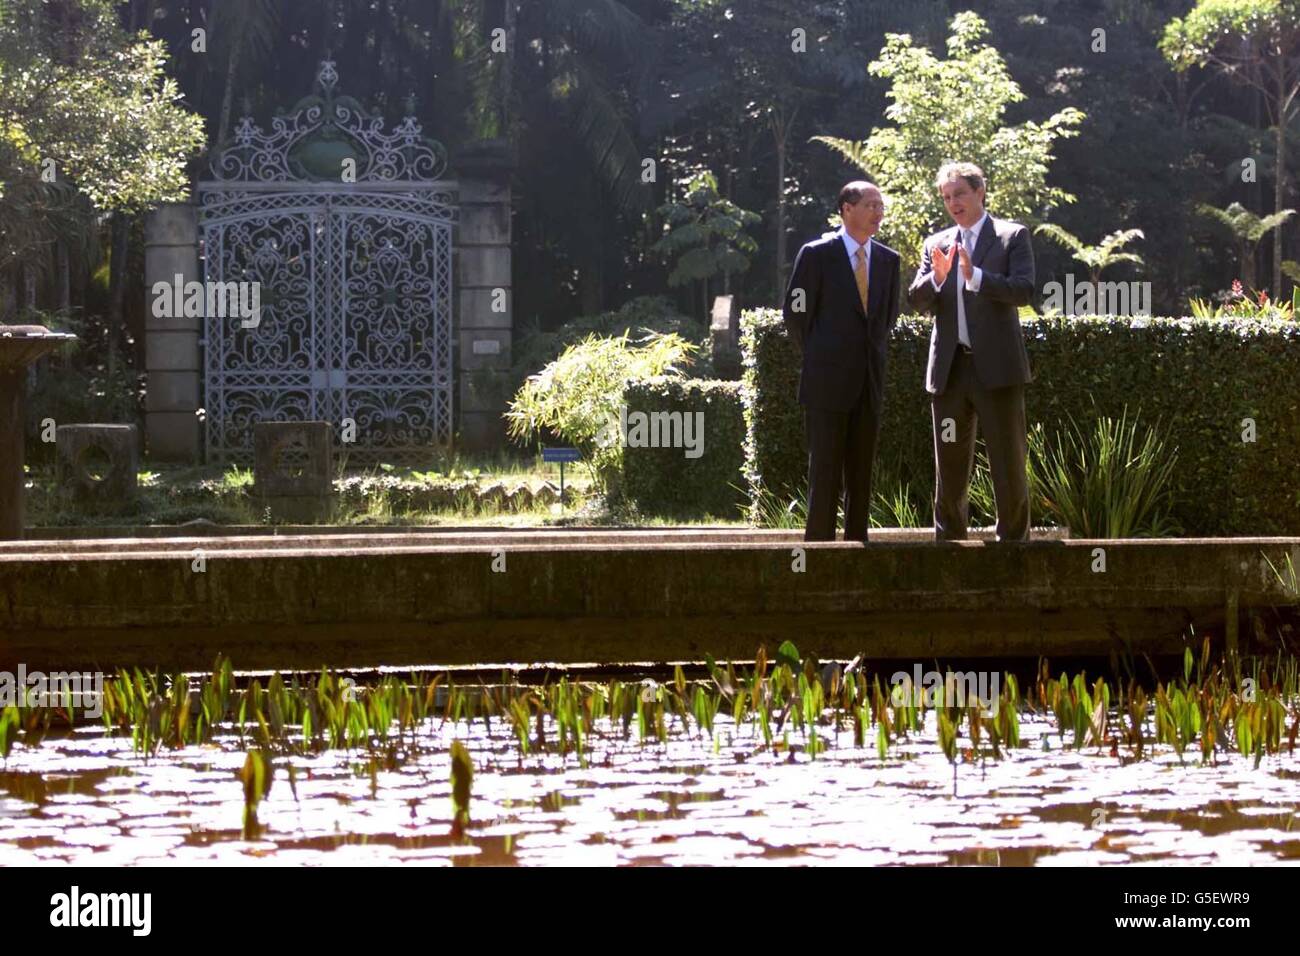 Der britische Premierminister Tony Blair (rechts) und der Gouverneur des Bundesstaates Sau Paulo, Dr. Geraldo Alckmin, während eines Besuchs im Botanischen Garten in Sau Paulo, Brasilien. Bei seiner Ankunft wurde Blair von Greenpeace-Aktivisten begrüßt, die gegen die Globalisierung protestierten. TBSA Stockfoto